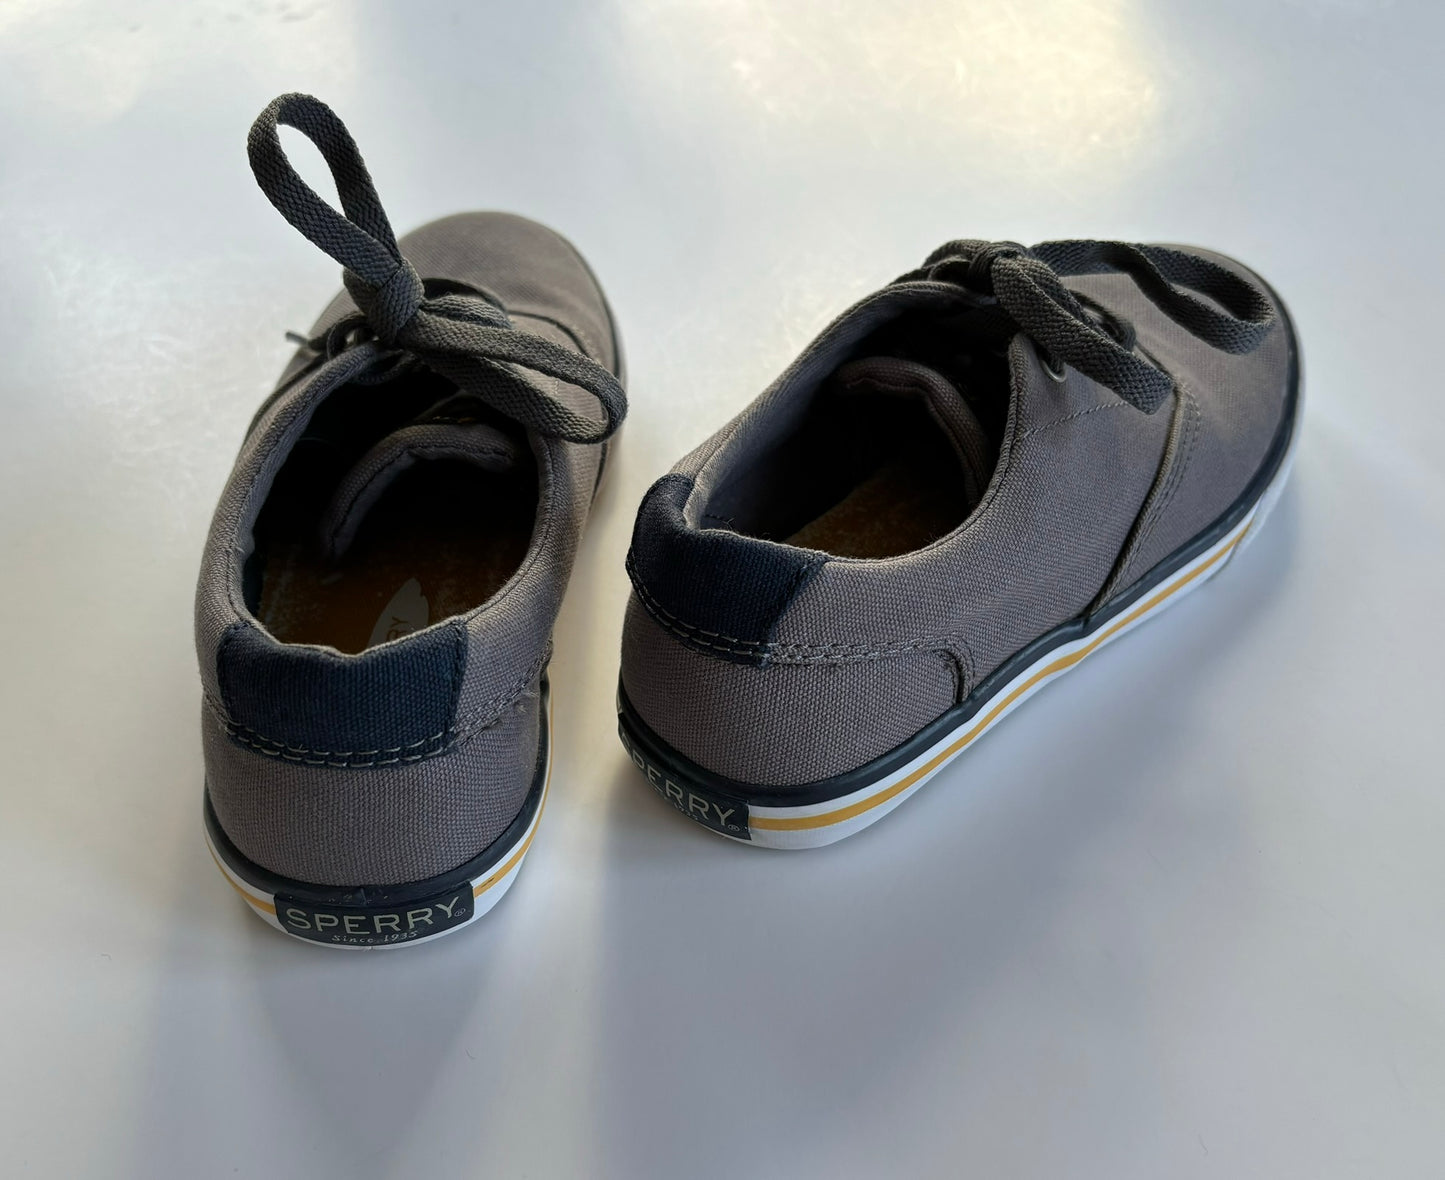 Boys Size 13.5 Sperry Striper II Boat Shoes Gray